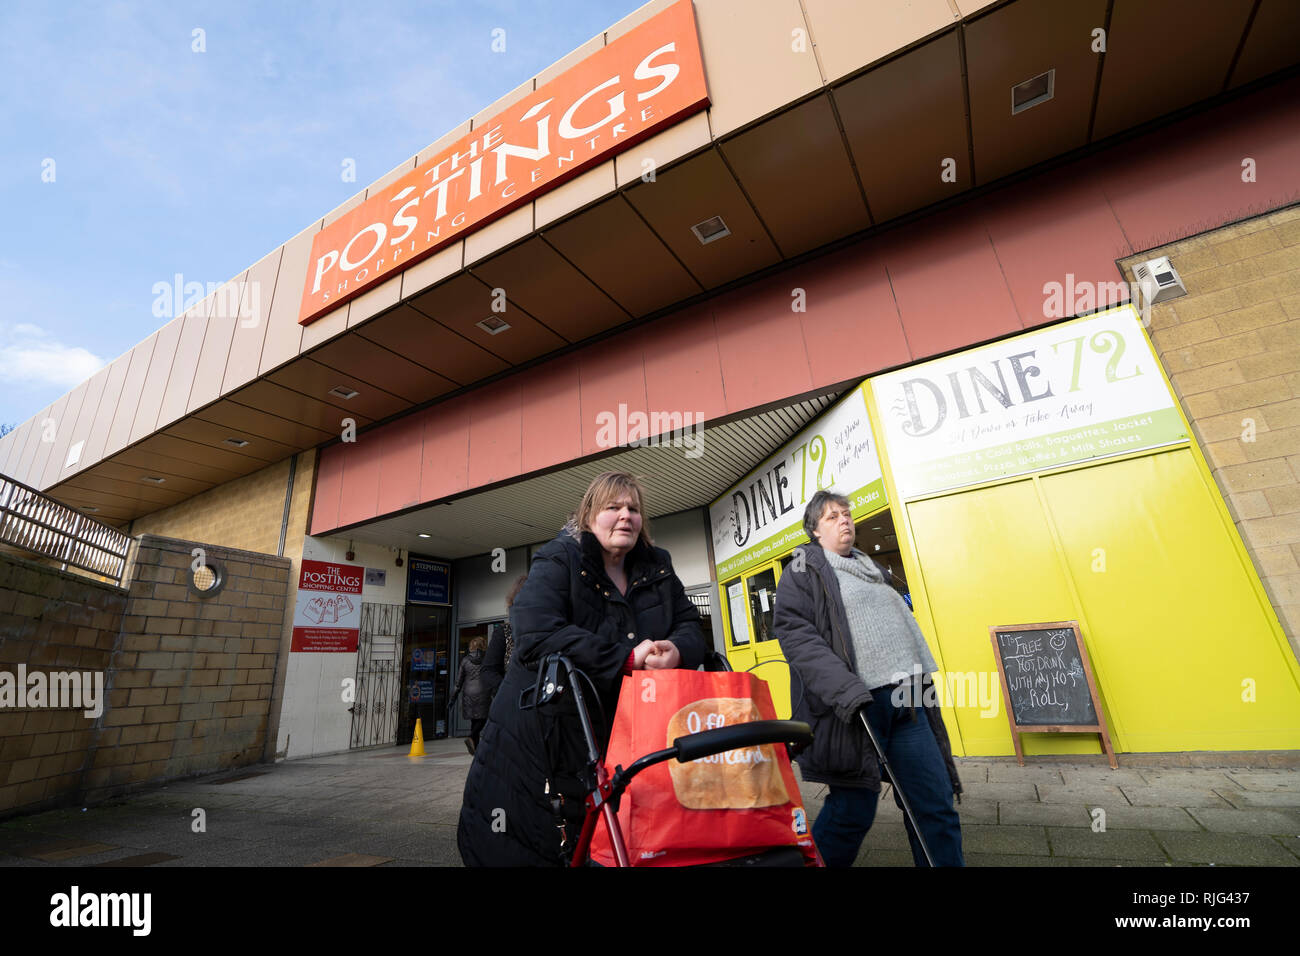 Kirkcaldy, Scotland, Regno Unito. 6 Feb 2019. I distacchi shopping centre in Kirkcaldy è stata venduta all'asta a Londra il 5 febbraio, 2019 con un prezzo di orientamento di una sterlina. Finalmente è stato venduto per tre cento e dieci mila libbre. Credito: Iain Masterton/Alamy Live News Foto Stock